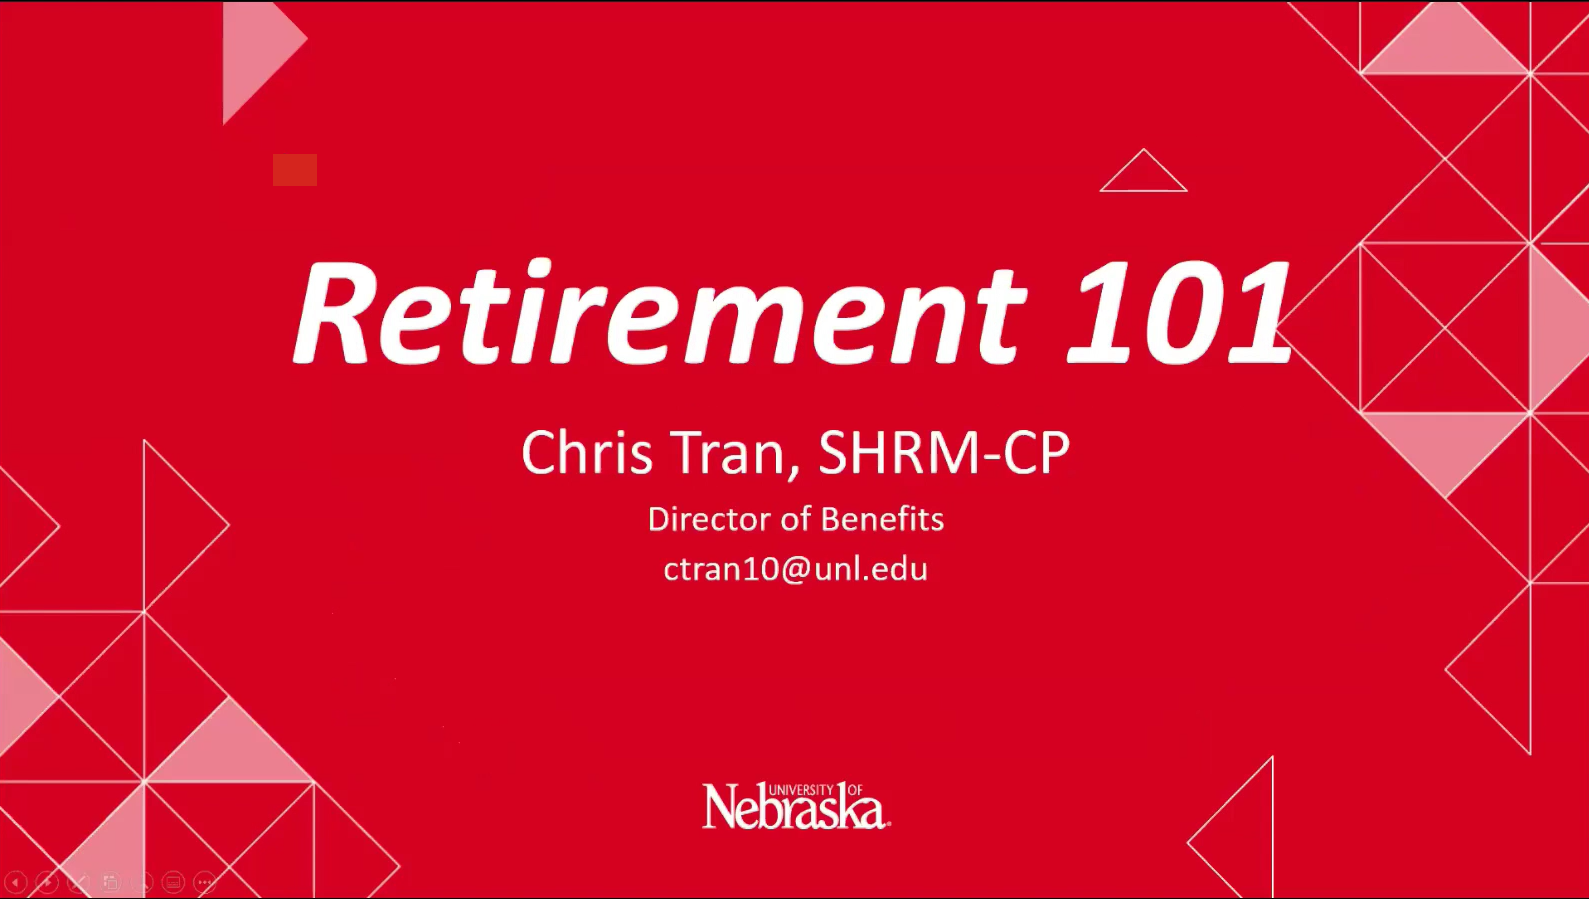 Retiring From the University of Nebraska